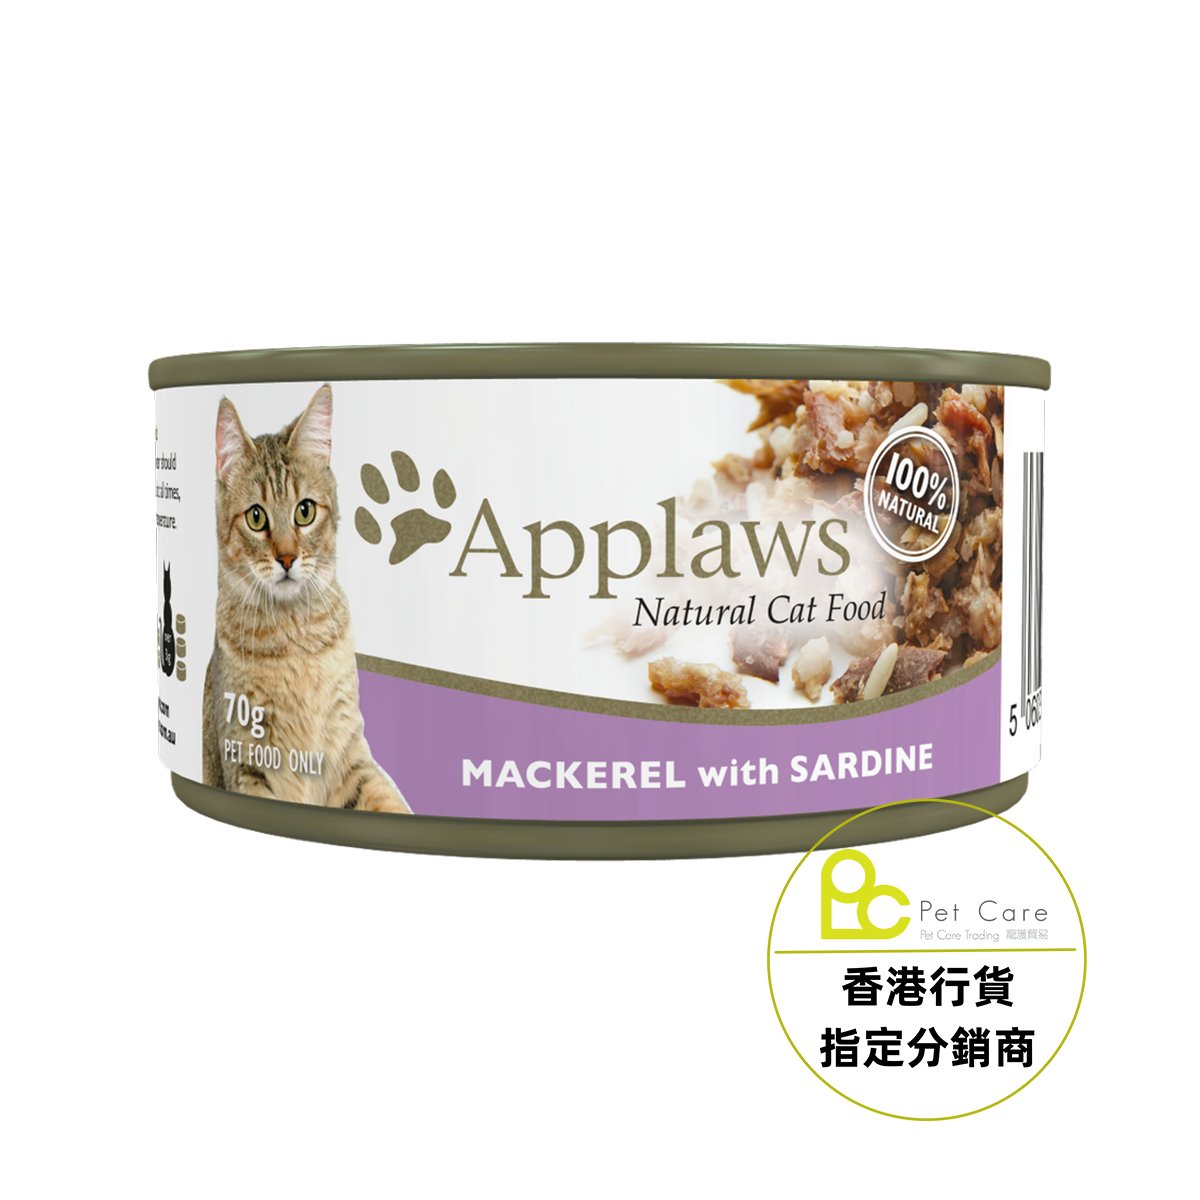 Applaws 全天然 貓罐頭 - 鯖魚沙甸魚 70g (細)